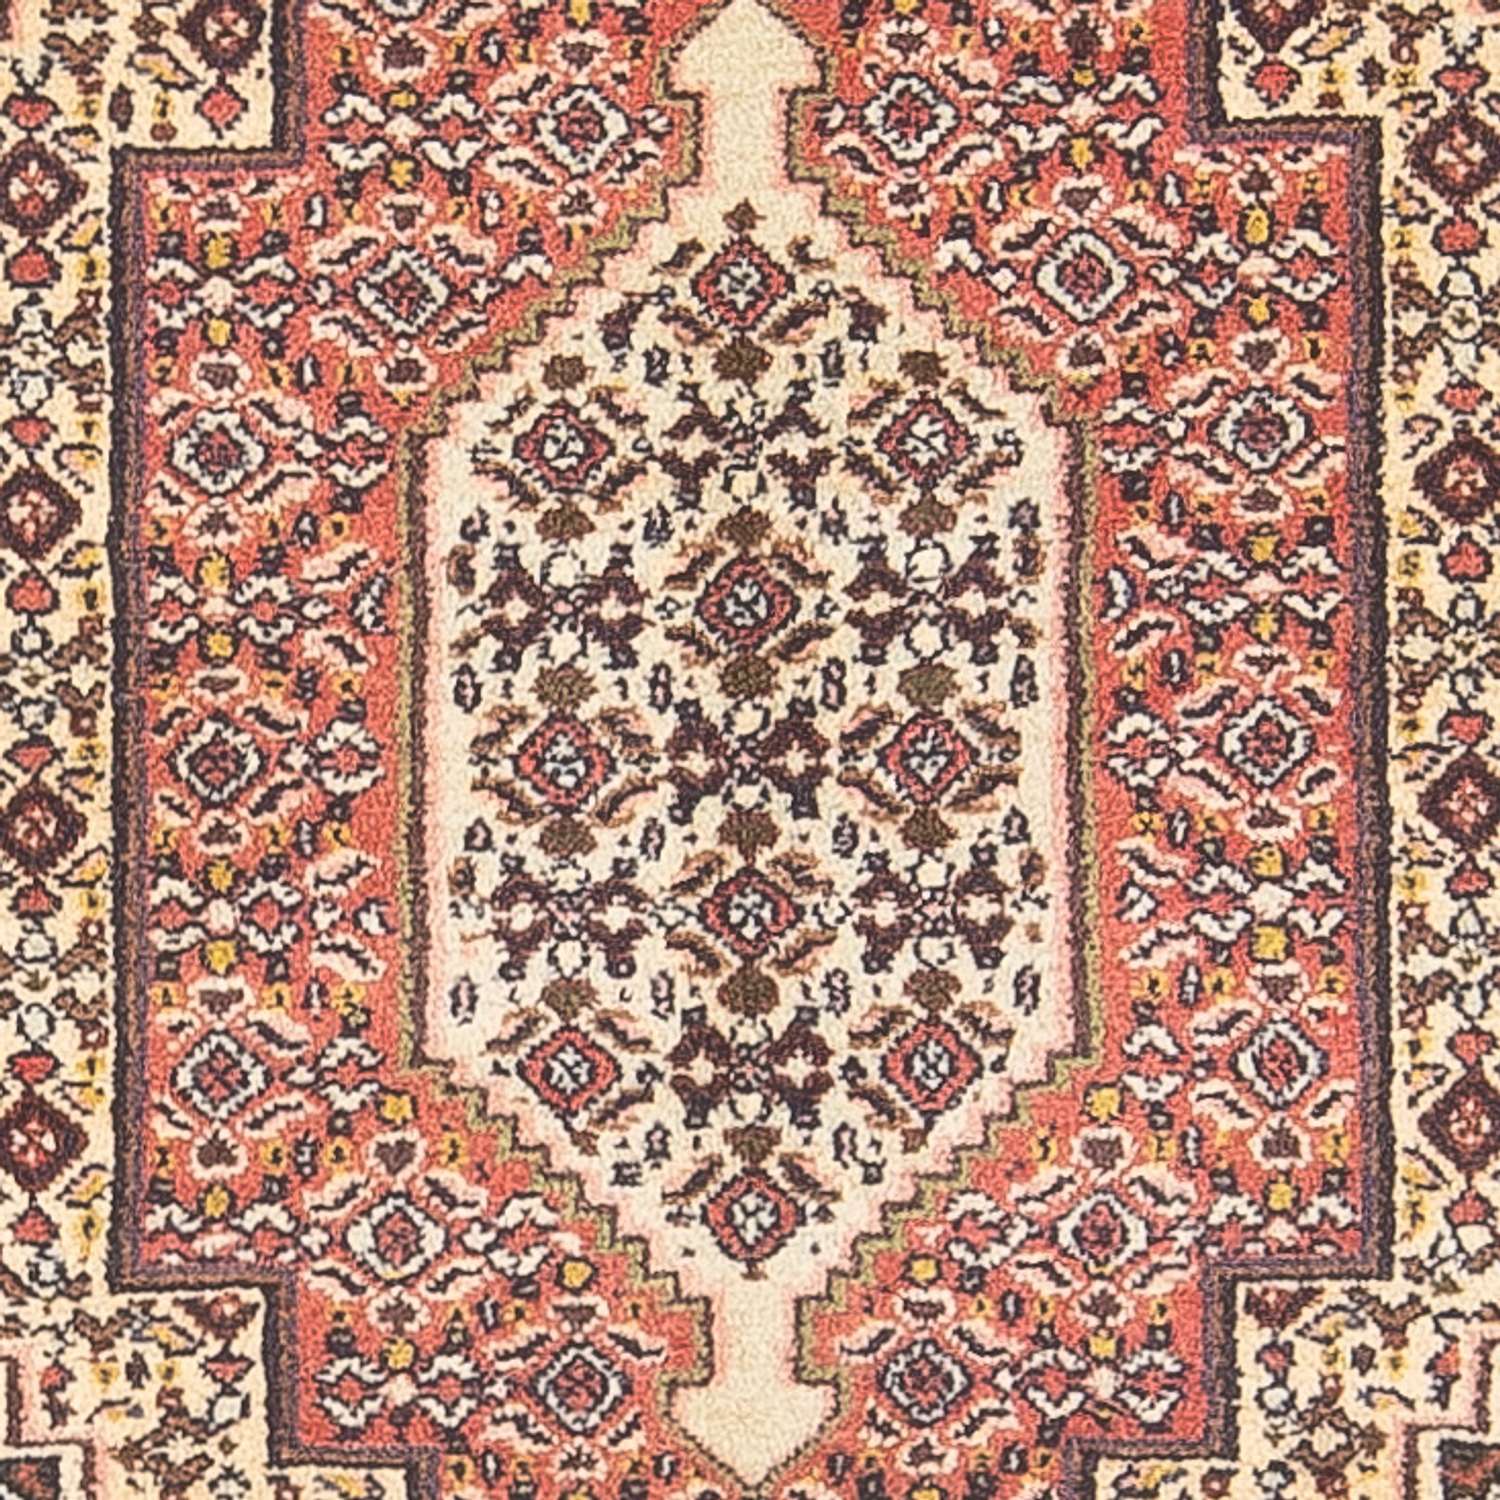 Persisk matta - Classic - 112 x 76 cm - ljusröd